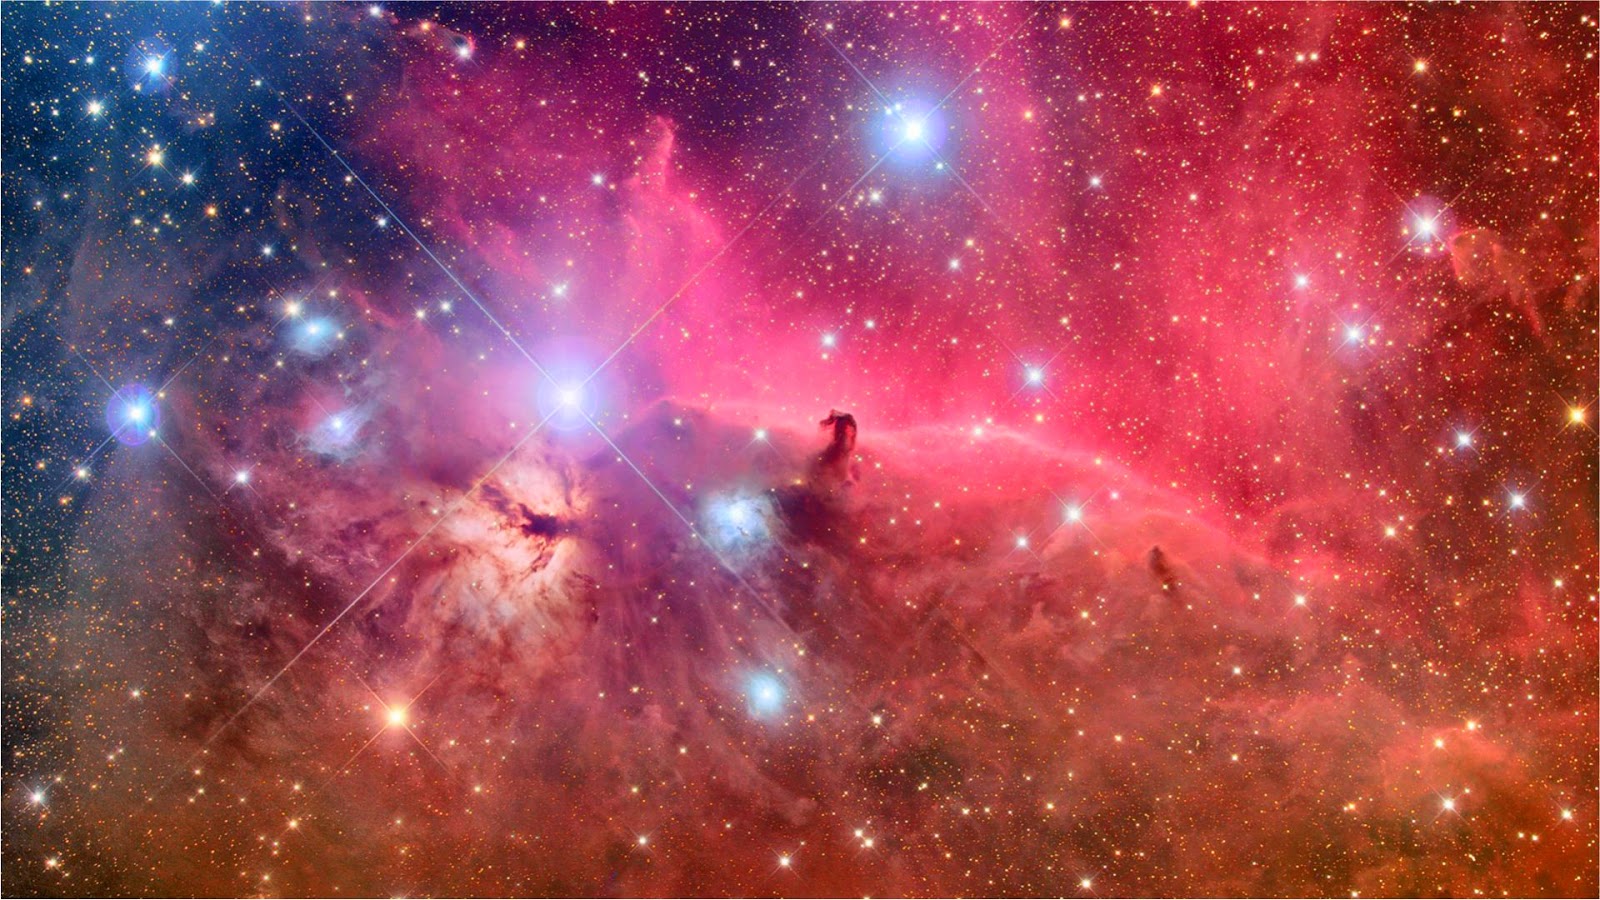 HD Wallpaper Nebula 1080p Image